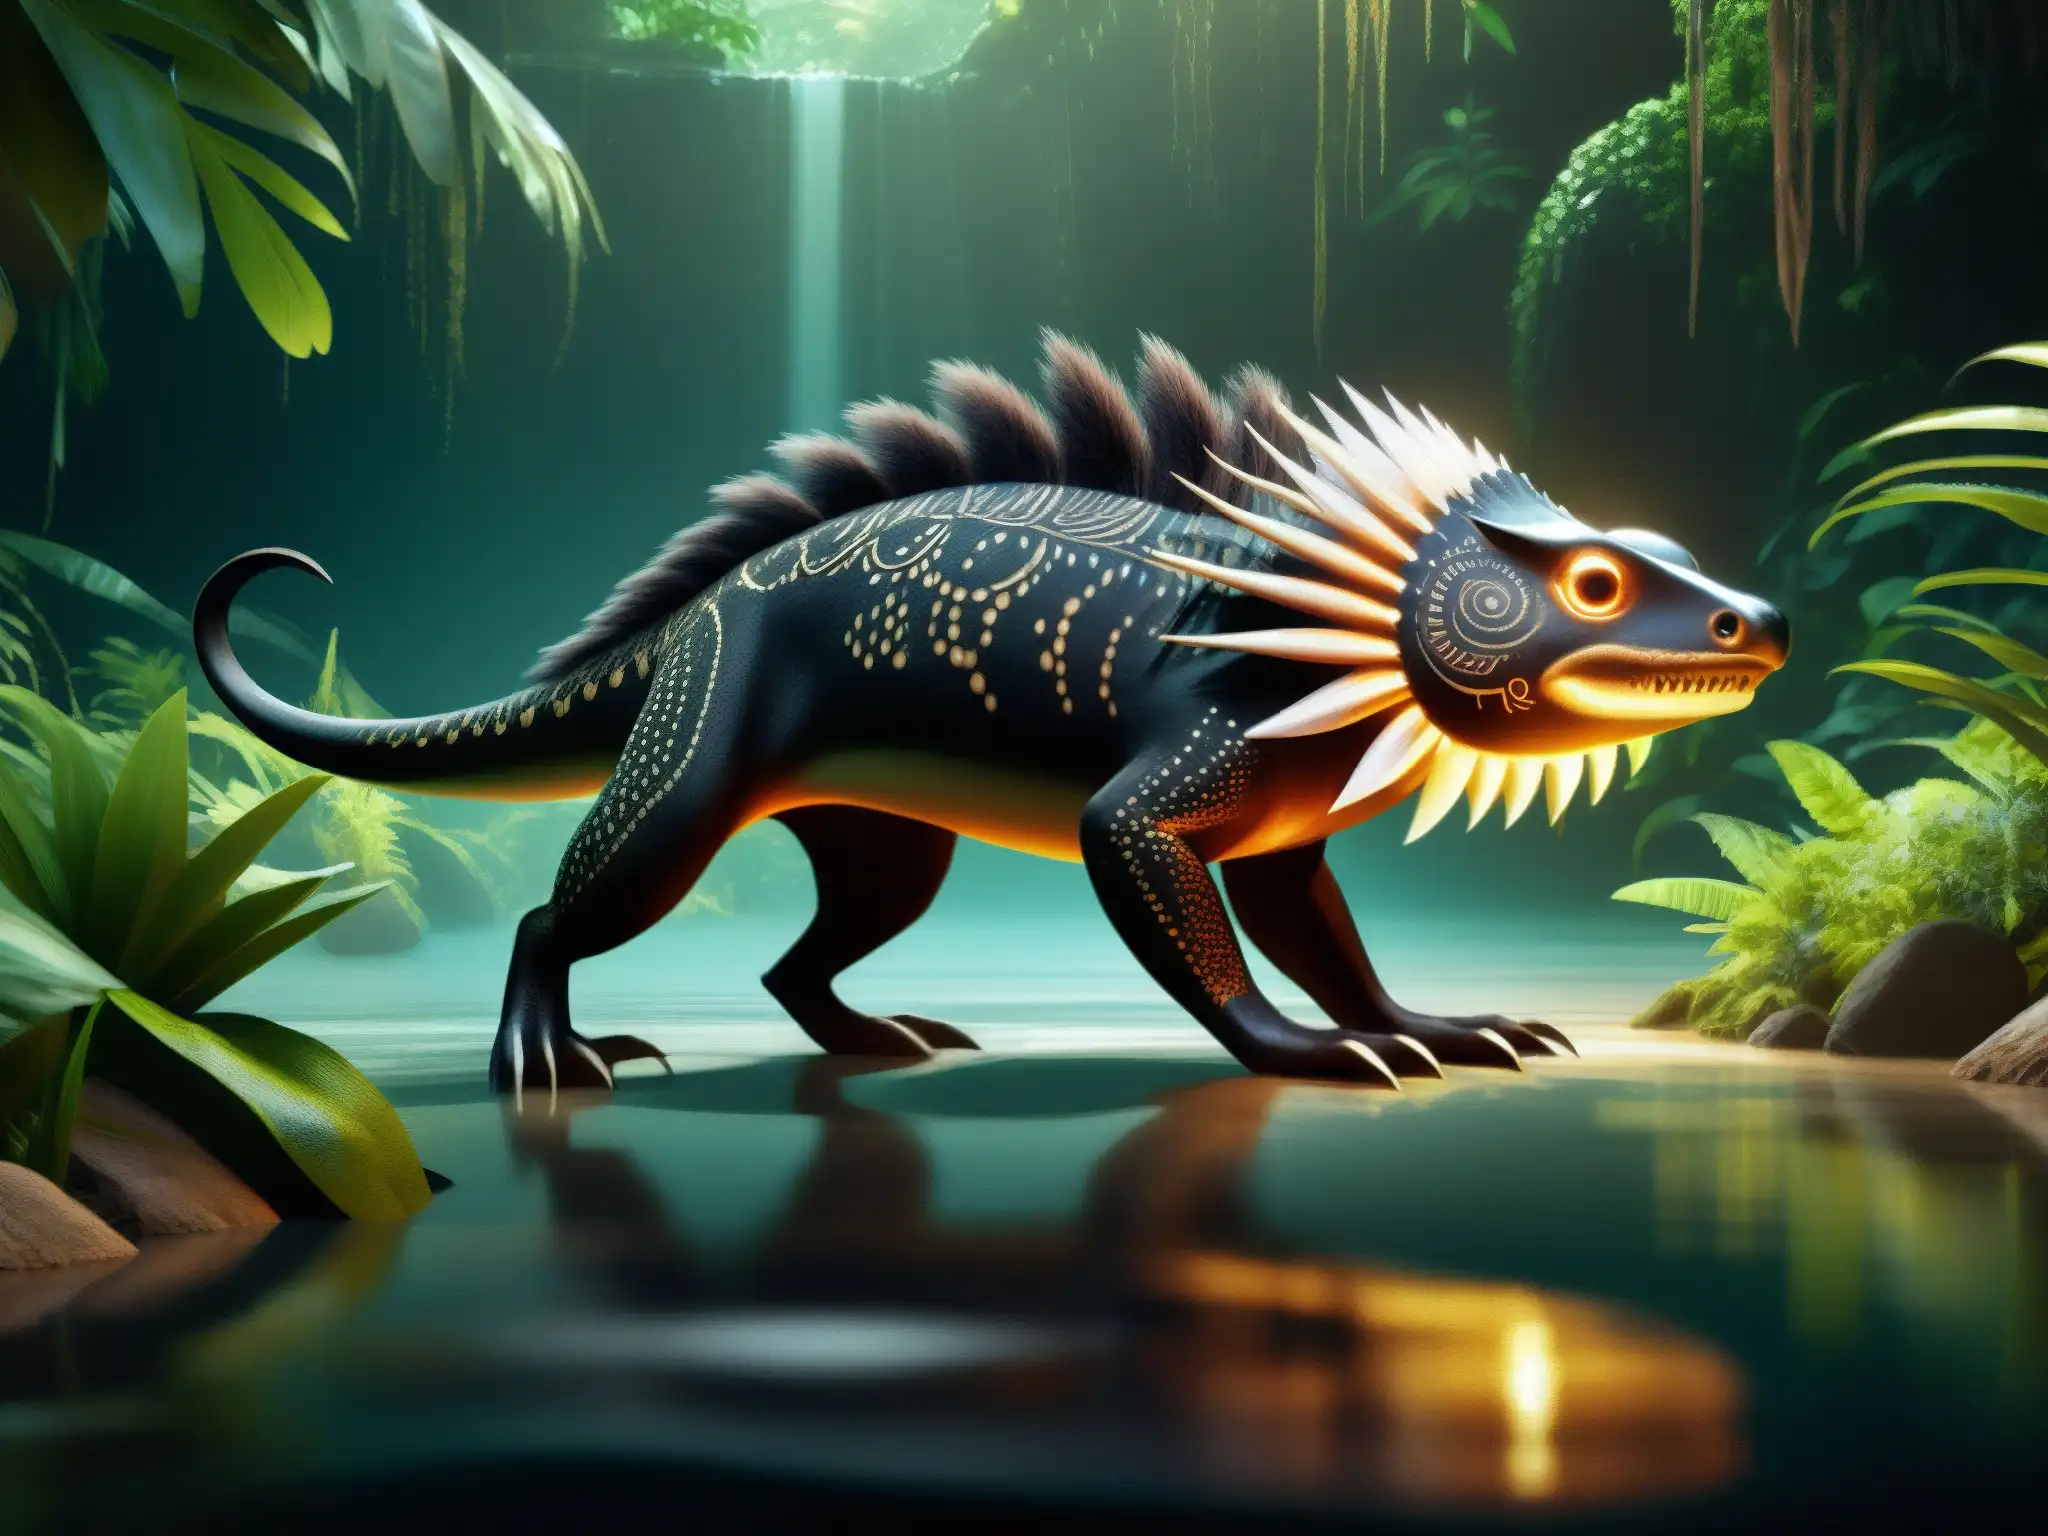 Ilustración detallada de la criatura acuática Ahuizotl prehispánica acechando en un río de la selva, emanando terror y peligro